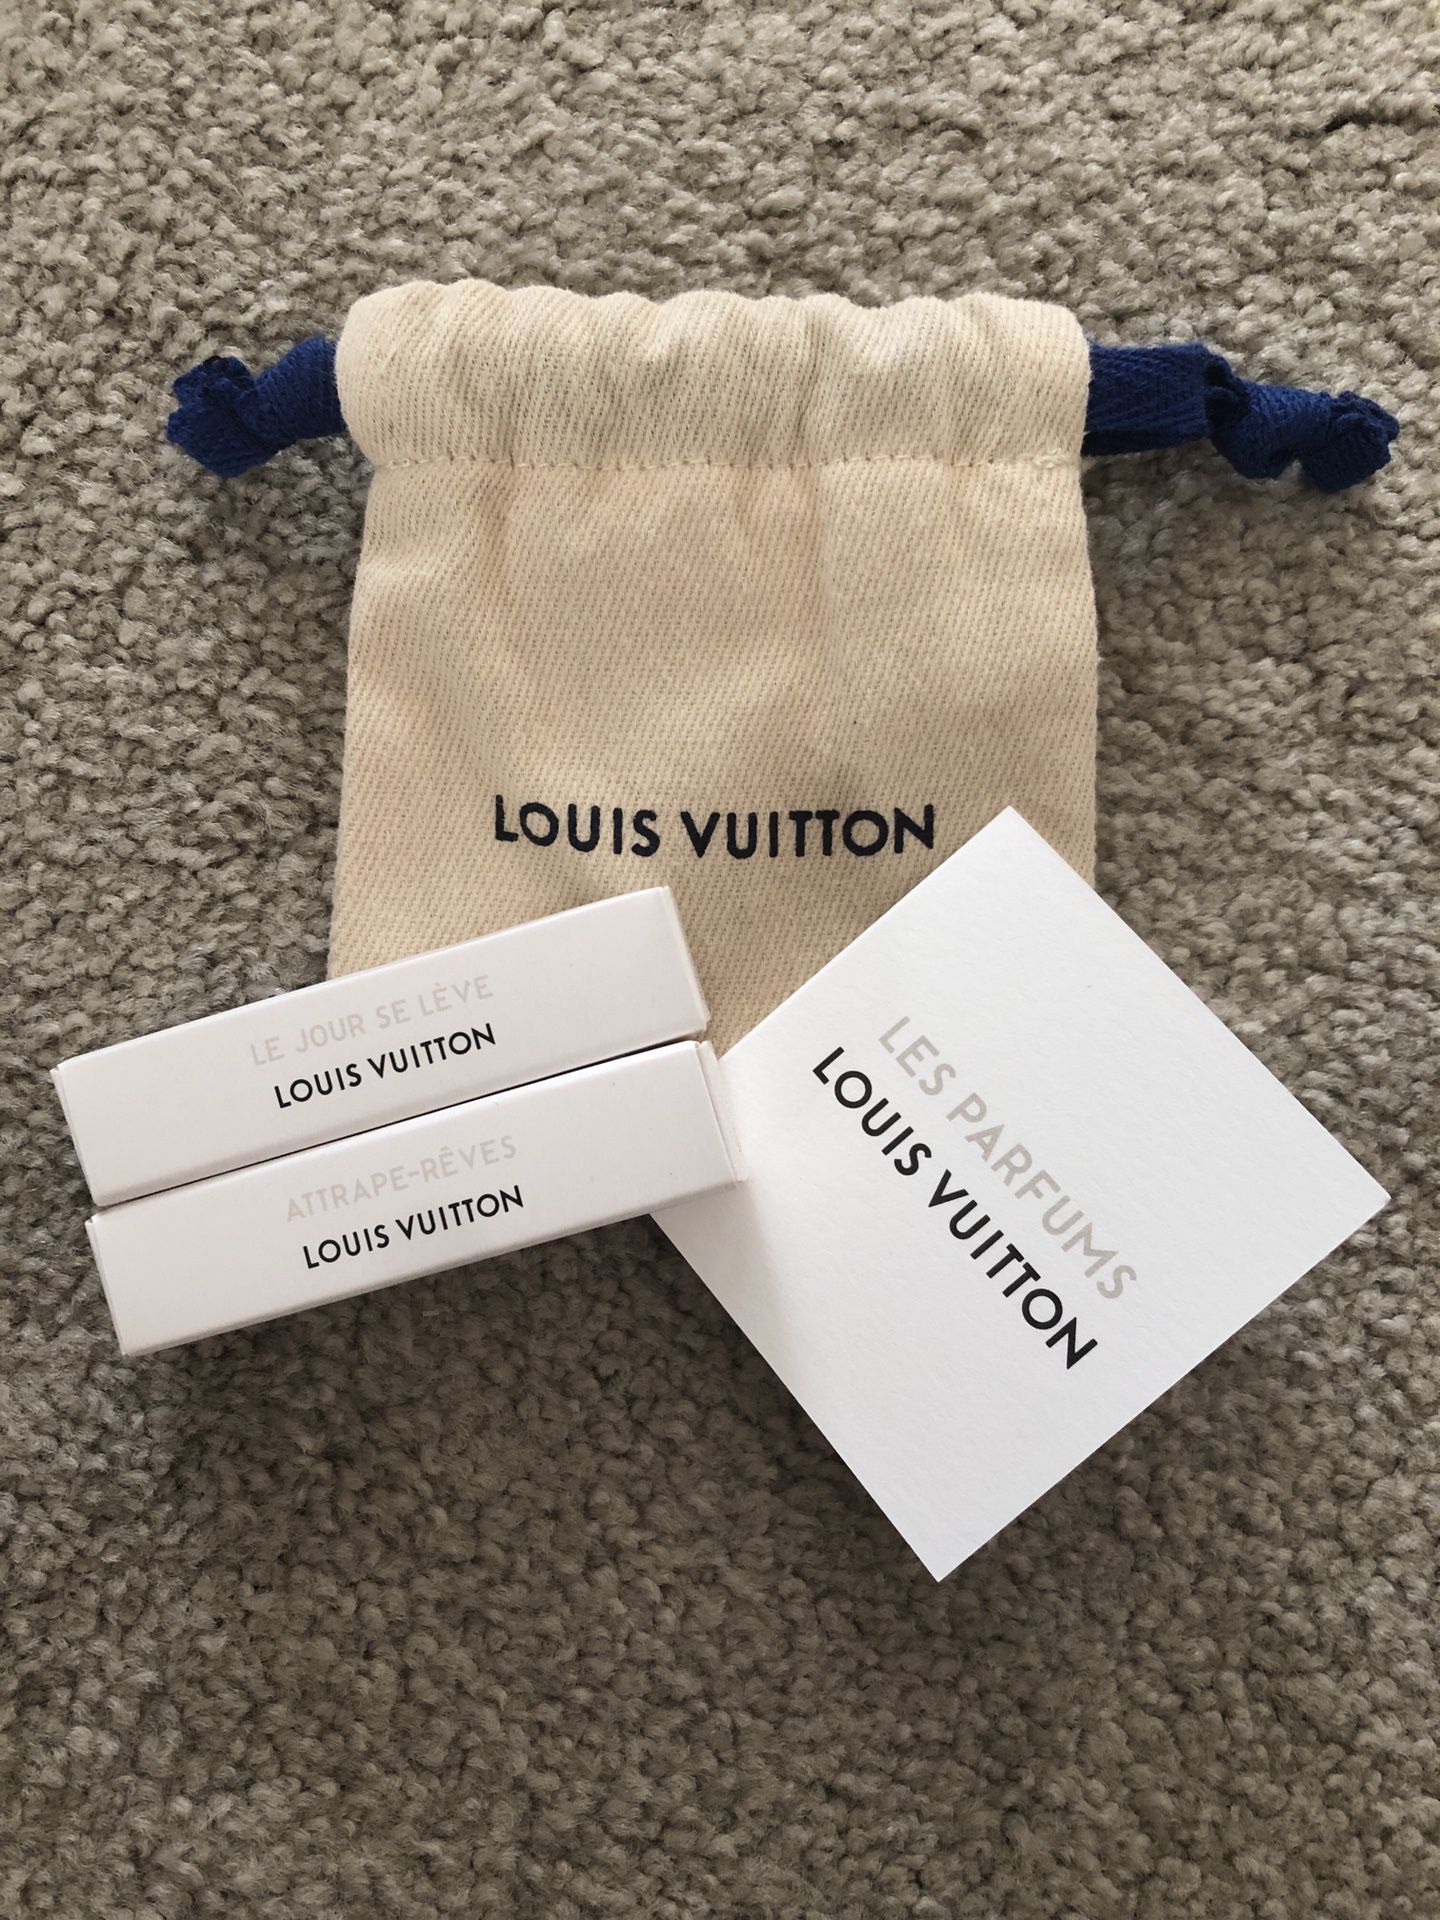 Louis Vuitton Attrape-Reves 100ml Eau De Parfum New Never Sprayed Bottle  for Sale in La Verne, CA - OfferUp